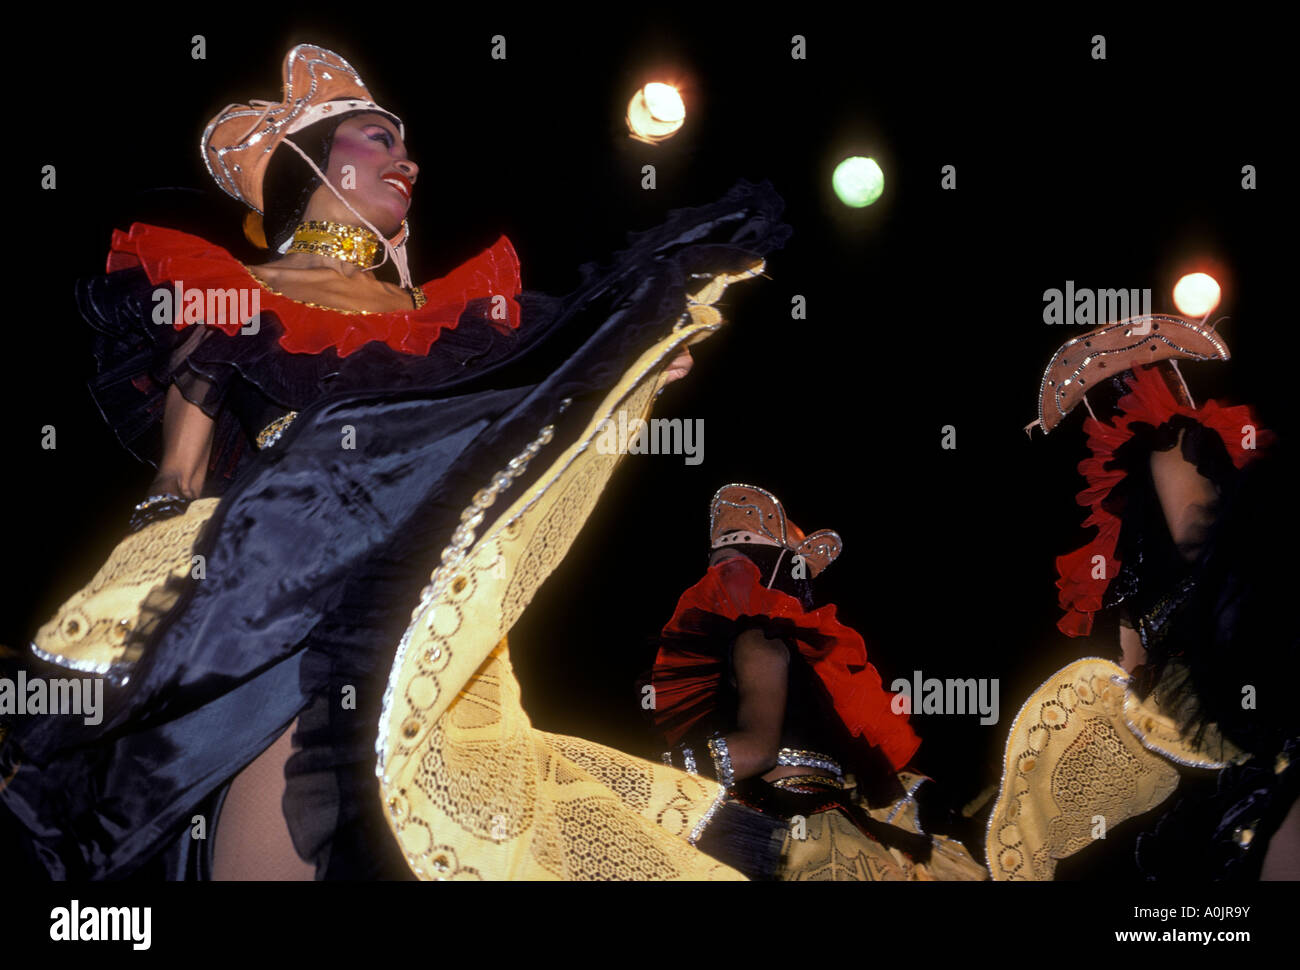 Cowgirls, xaxado Tanz, brasilianische Frauen, Brasilianer, Tänzer, Karneval Kostüm, Nachtclub Leistung, Rio de Janeiro, Rio de Janeiro, Brasilien Stockfoto